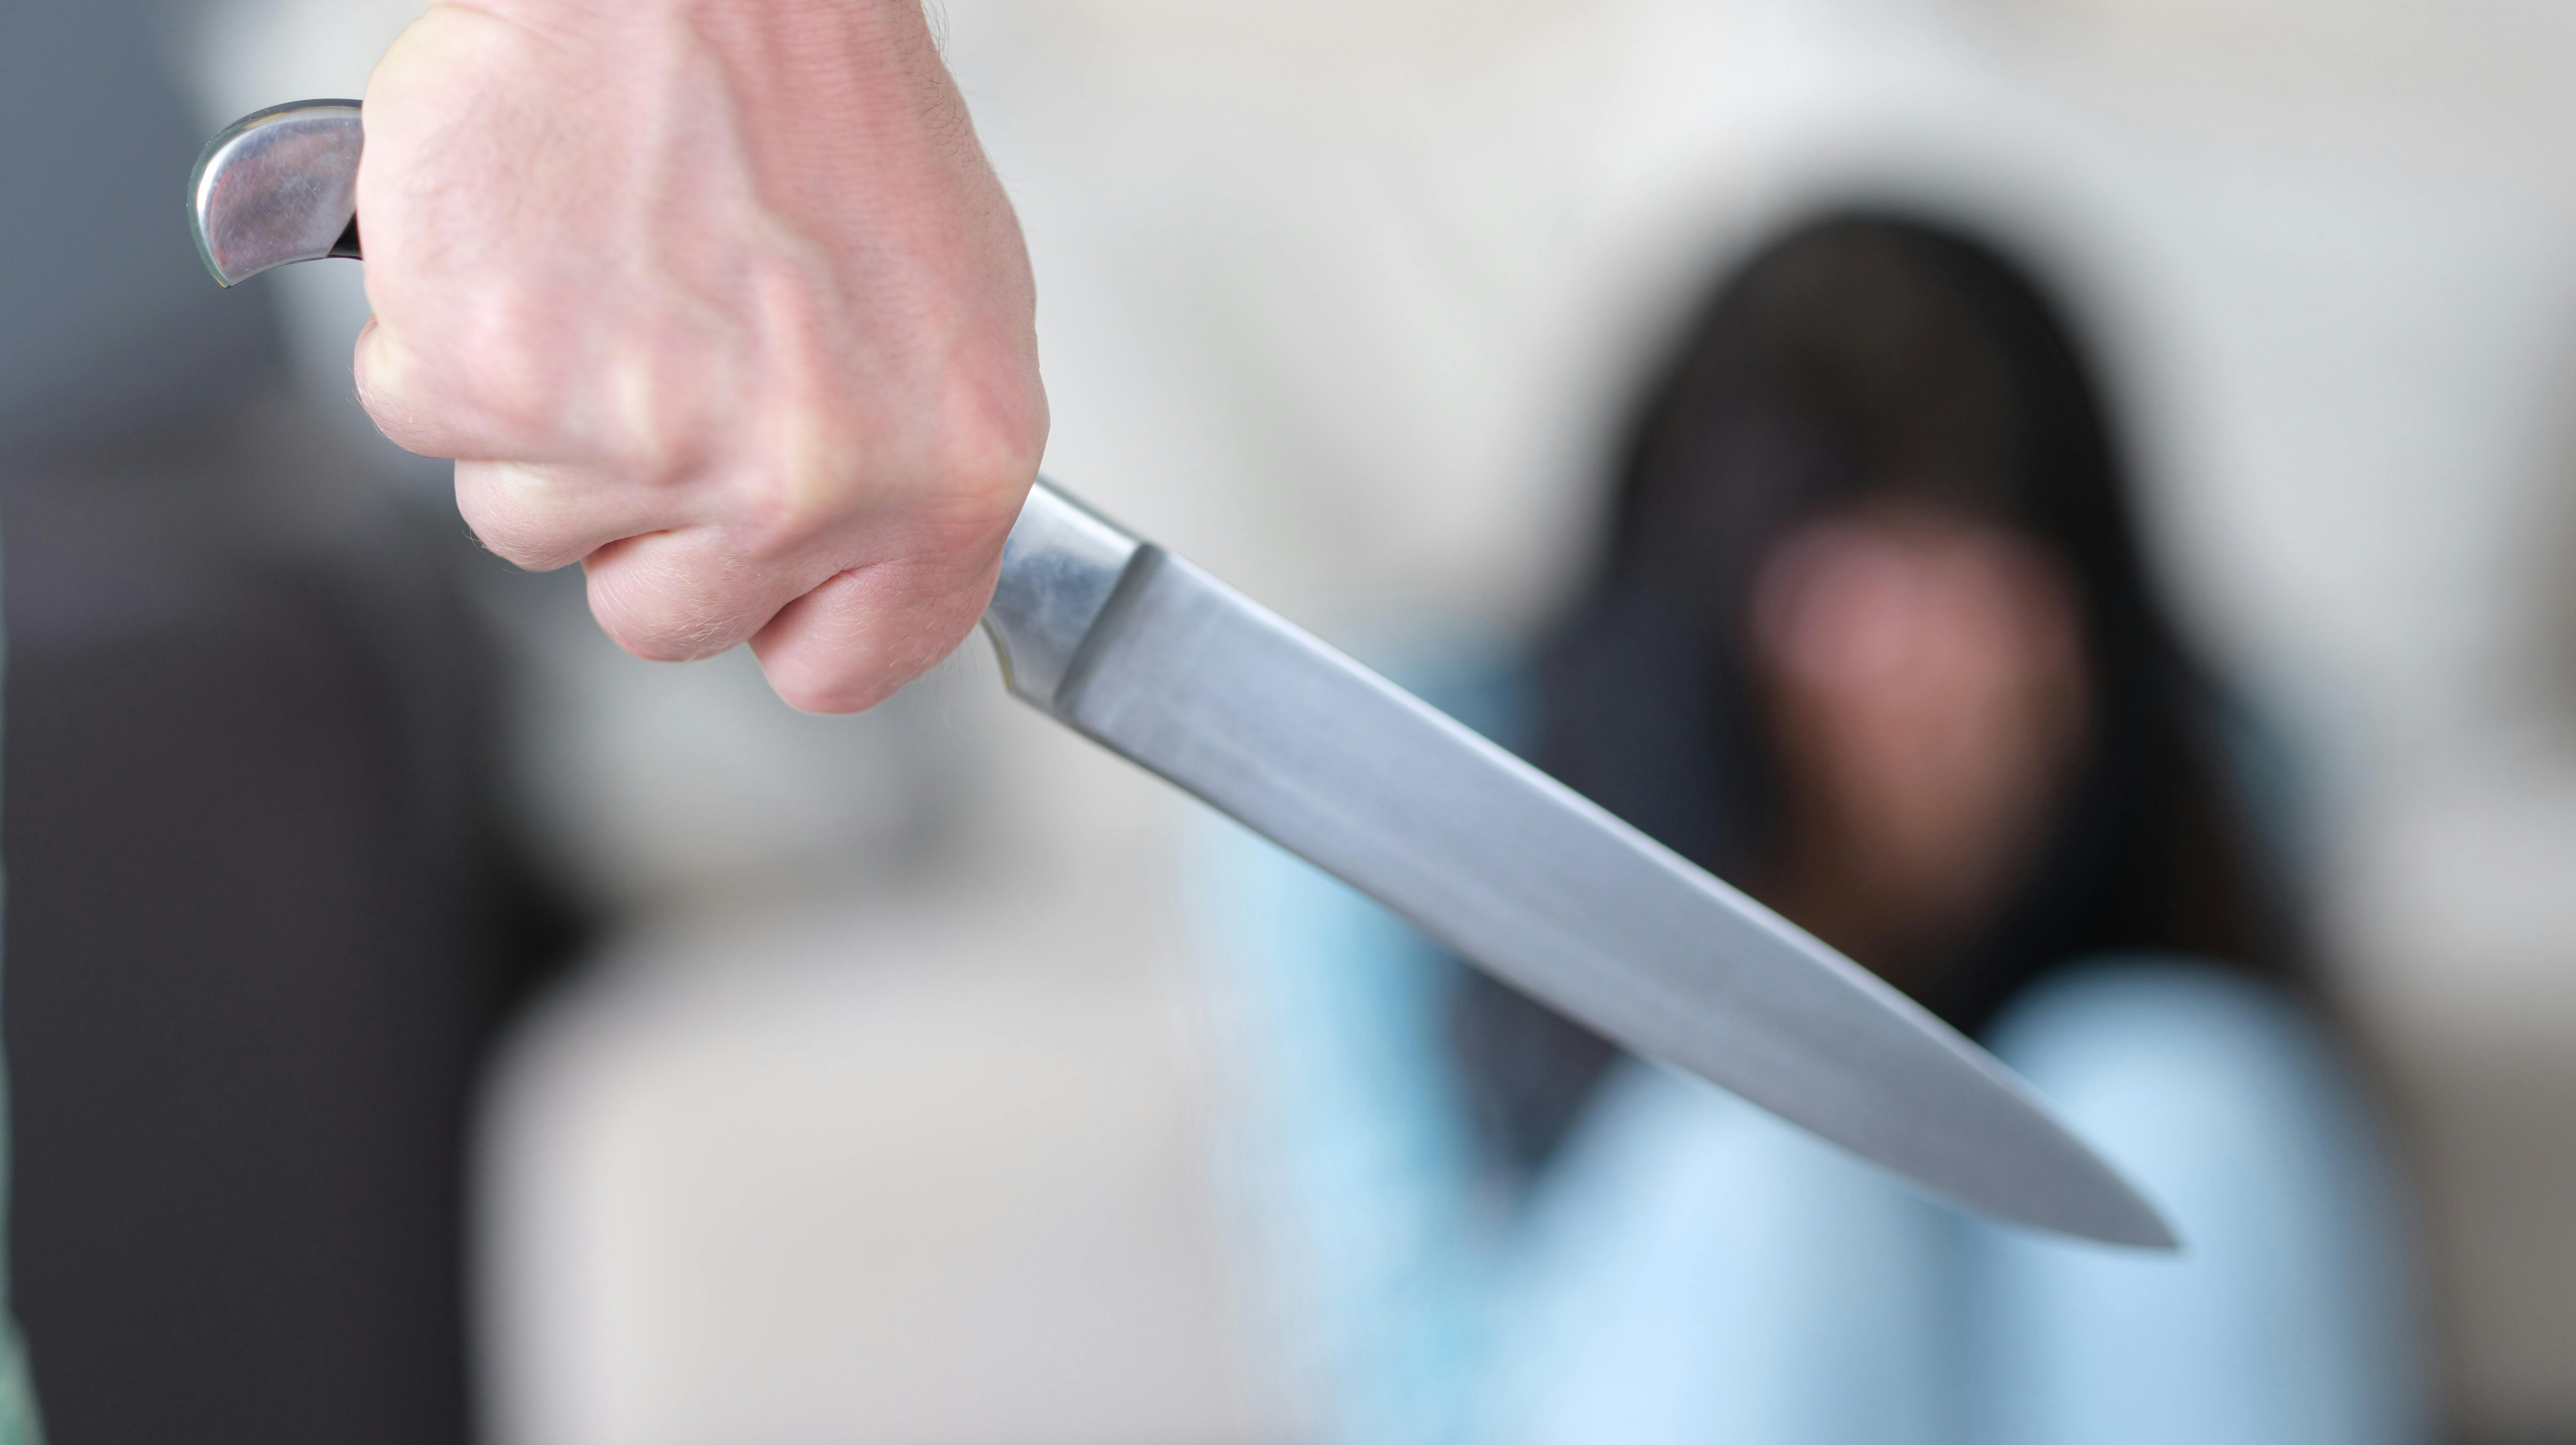 En tidligere relitydeltager er igen blevet tiltalt for vold - denne gang har han slået, sparket og truet en kvinde med kniv.